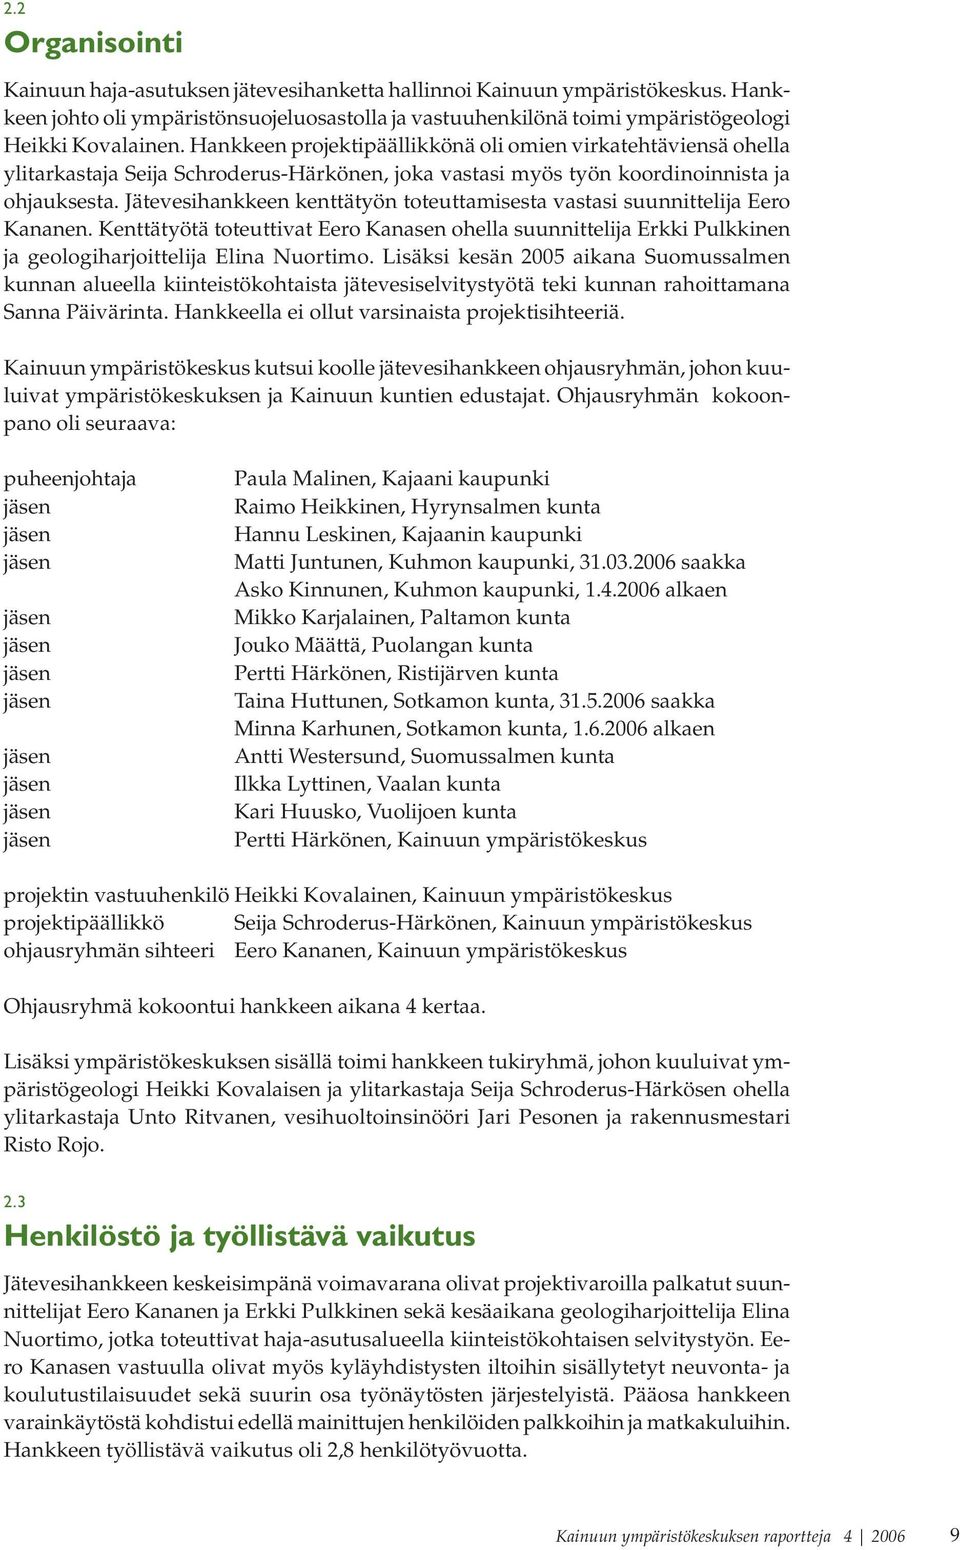 Jätevesihankkeen kenttätyön toteuttamisesta vastasi suunnittelija Eero Kananen. Kenttätyötä toteuttivat Eero Kanasen ohella suunnittelija Erkki Pulkkinen ja geologiharjoittelija Elina Nuortimo.